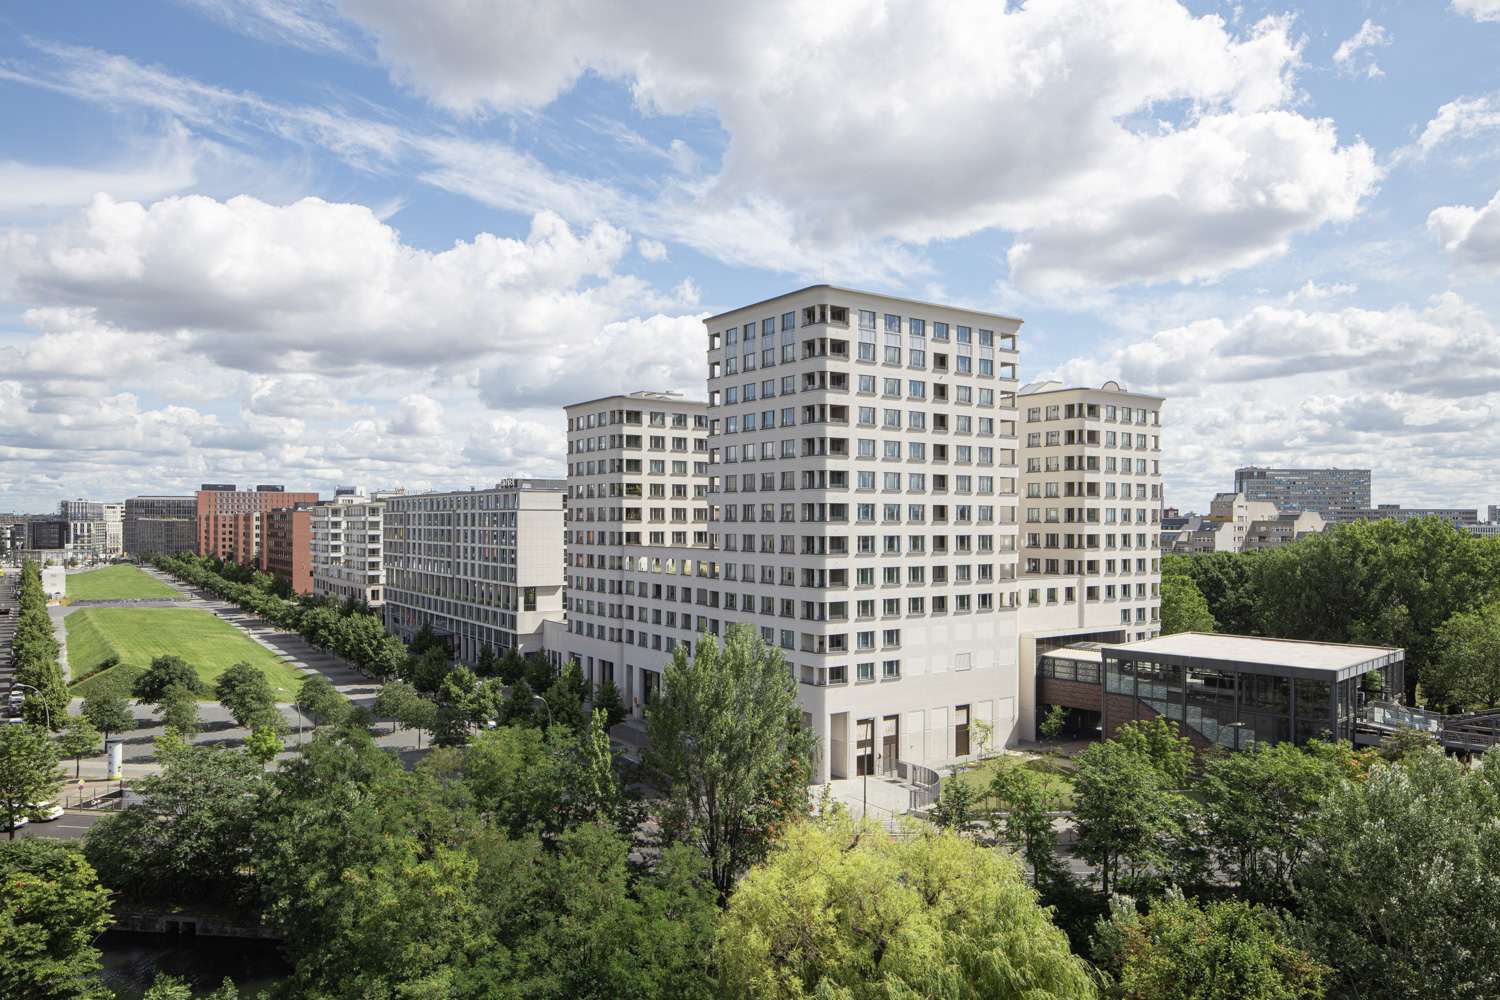 Aussicht vom Hotel - high Park Berlin am Potsdamer Platz - Architekturfotografie Ken Wagner